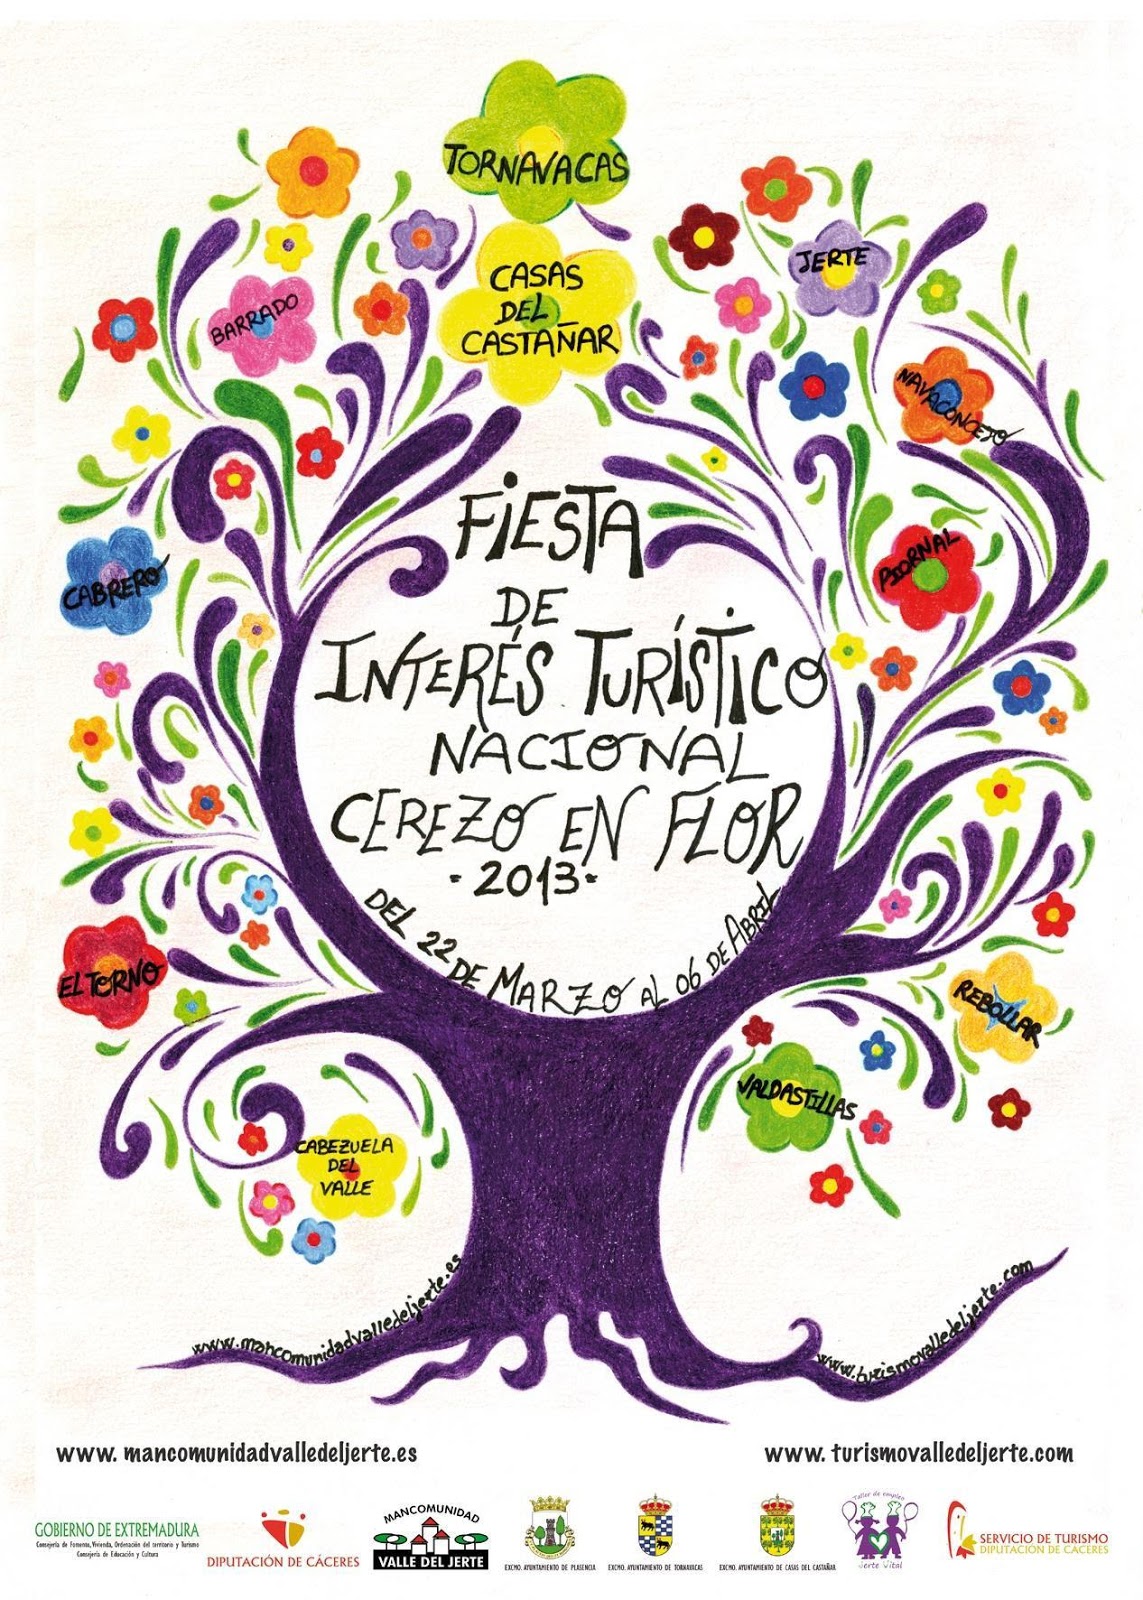 Cartel Oficial Cerezo en Flor 2013